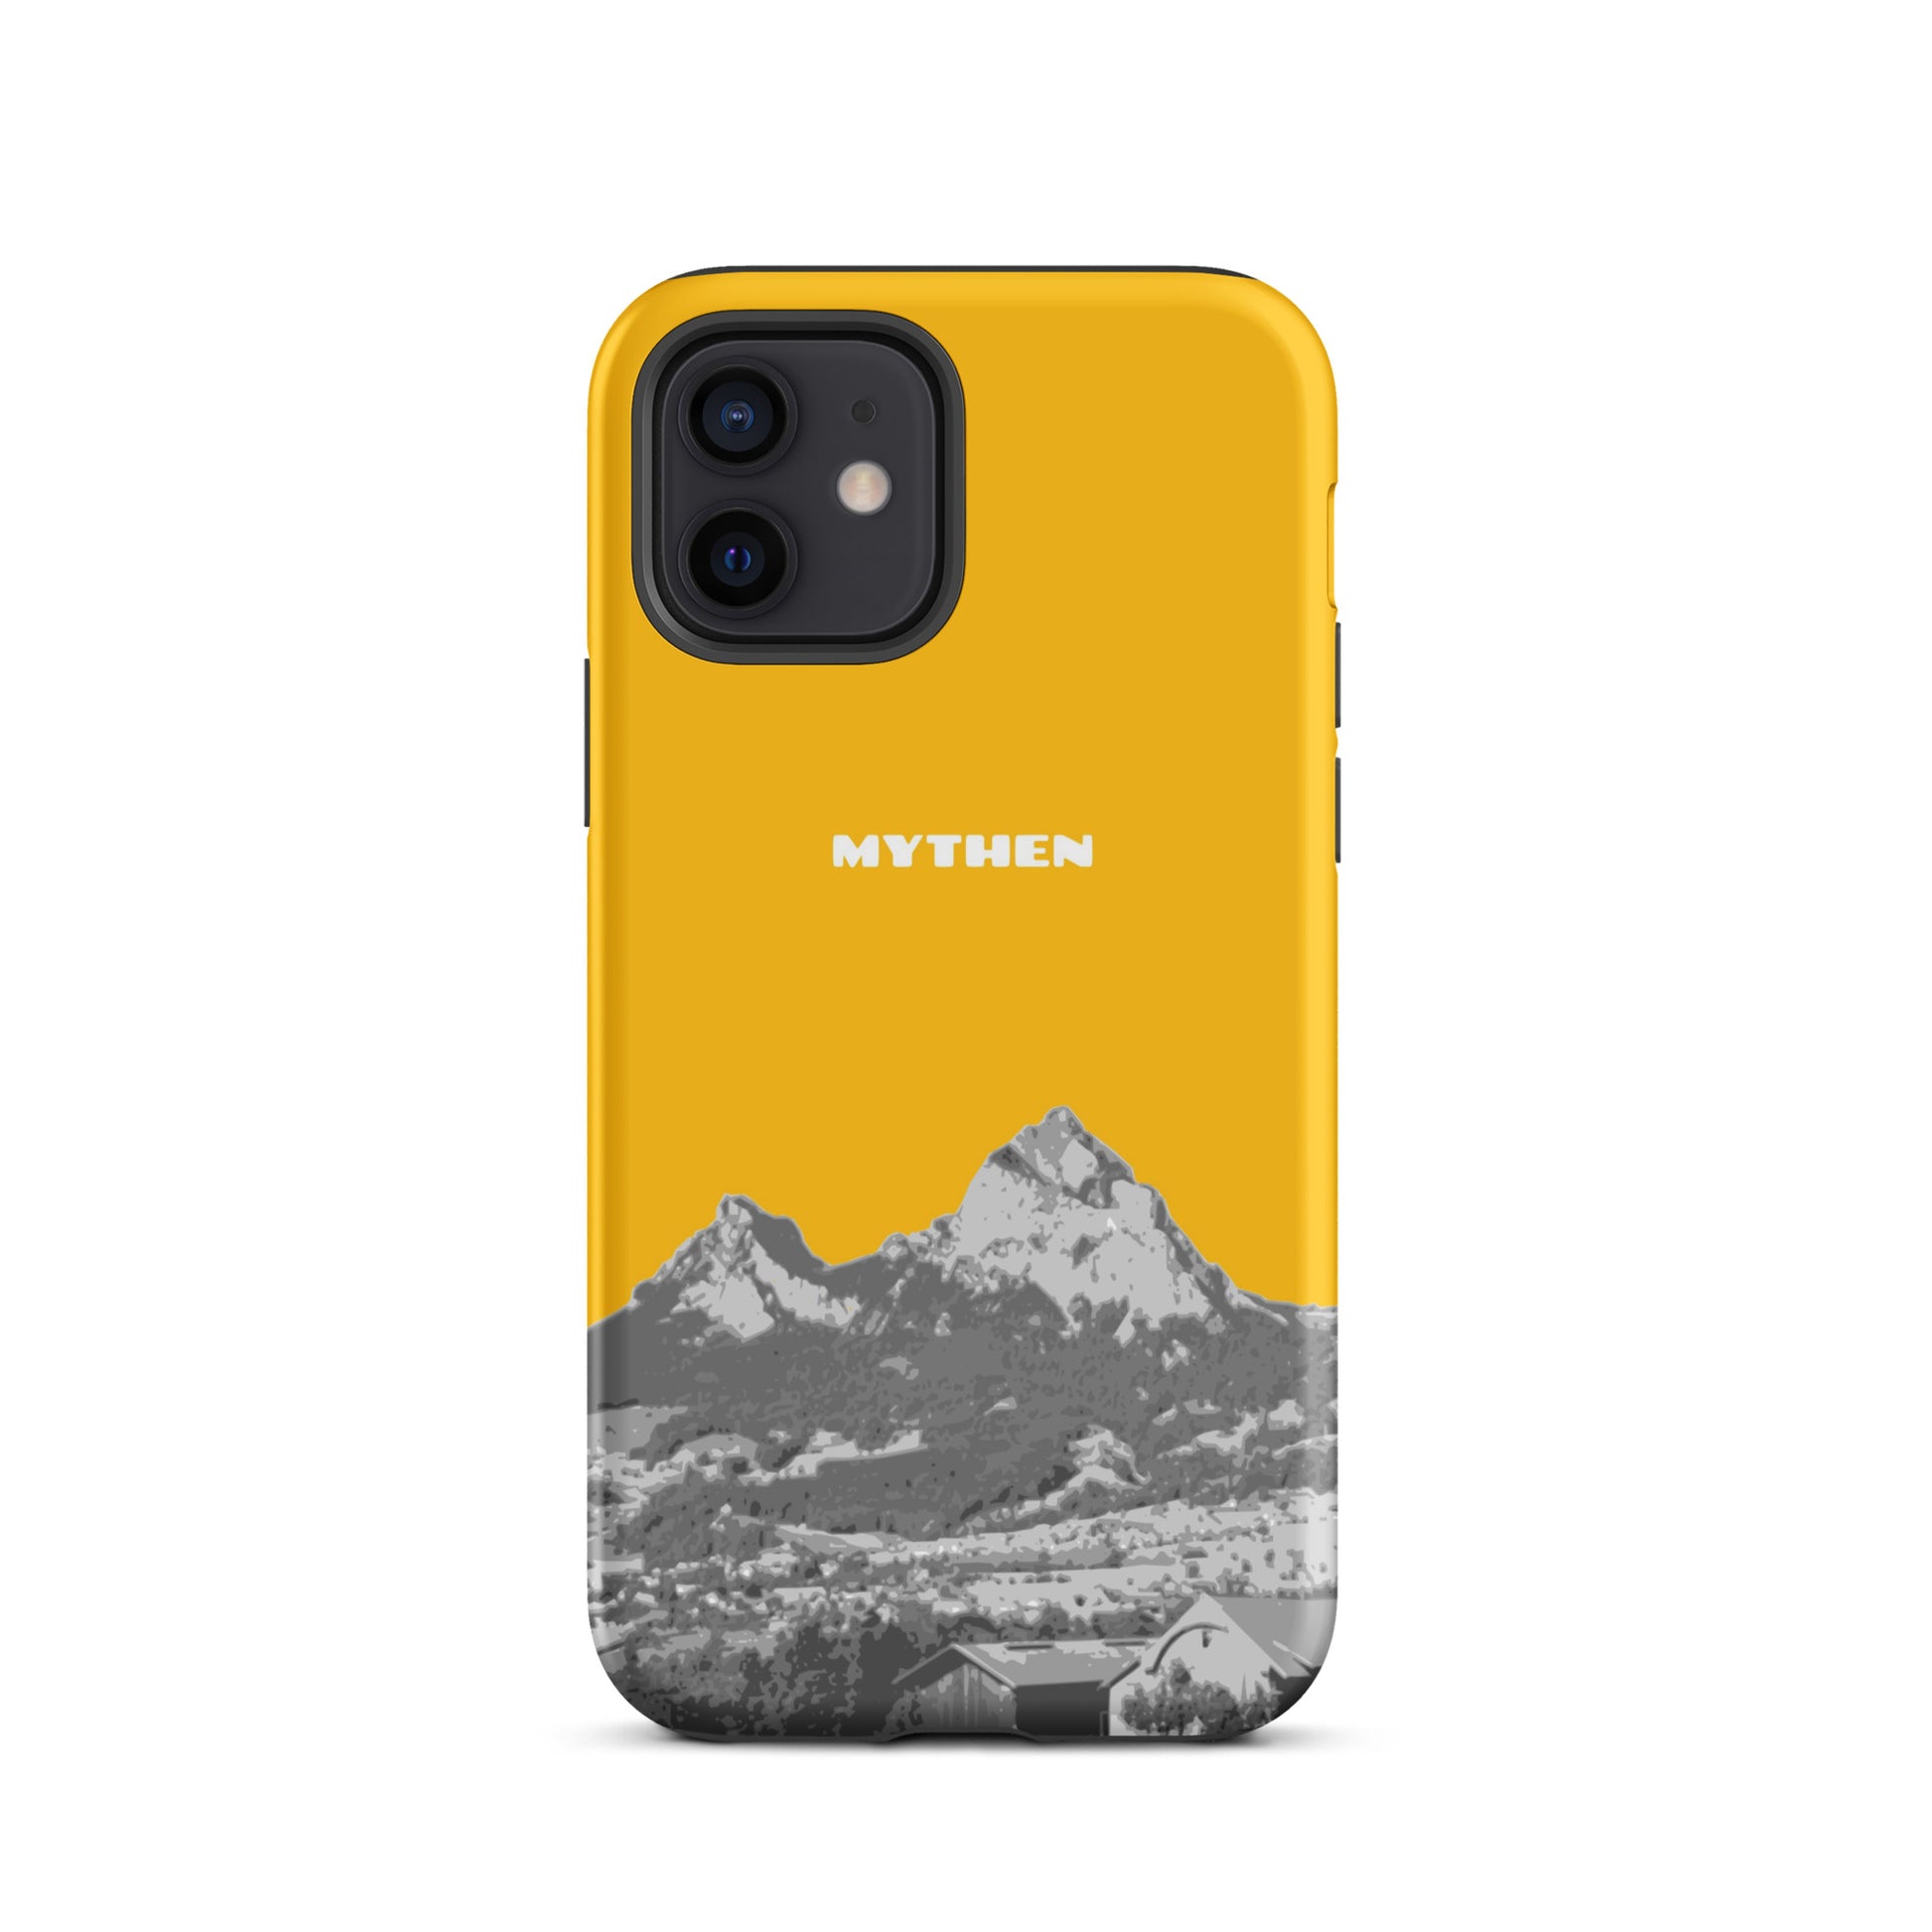 Hülle für das iPhone 12 von Apple in der Farbe Goldgelb, dass den Grossen Mythen und den Kleinen Mythen bei Schwyz zeigt. 